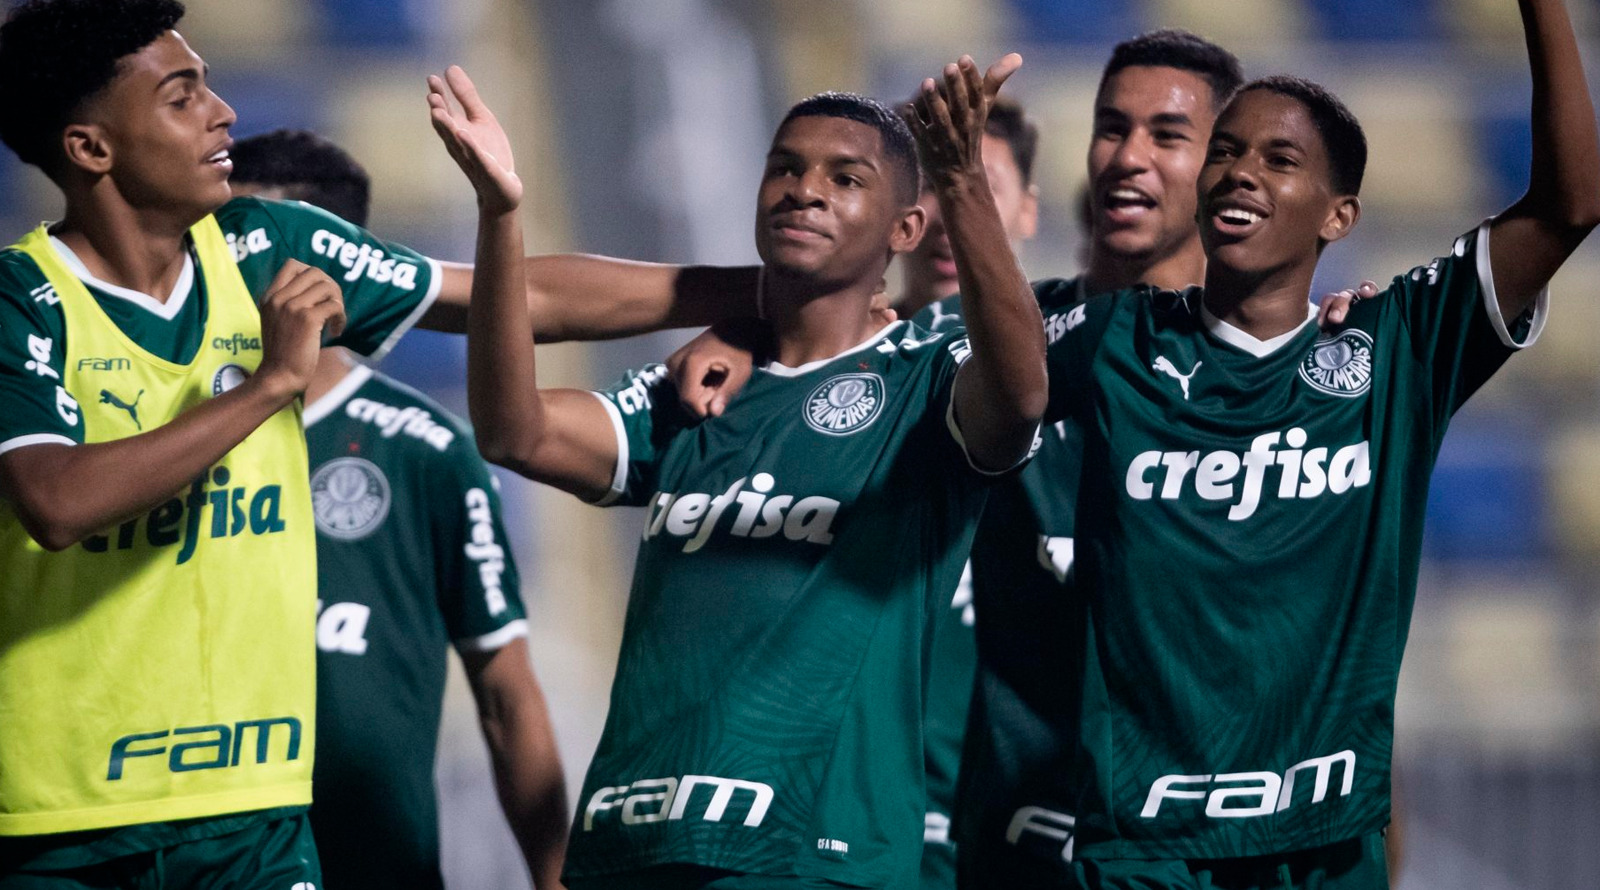 Vale a pena? Zenit quer craque do Palmeiras e envolve Claudinho em negócio  - NossoPalmeiras